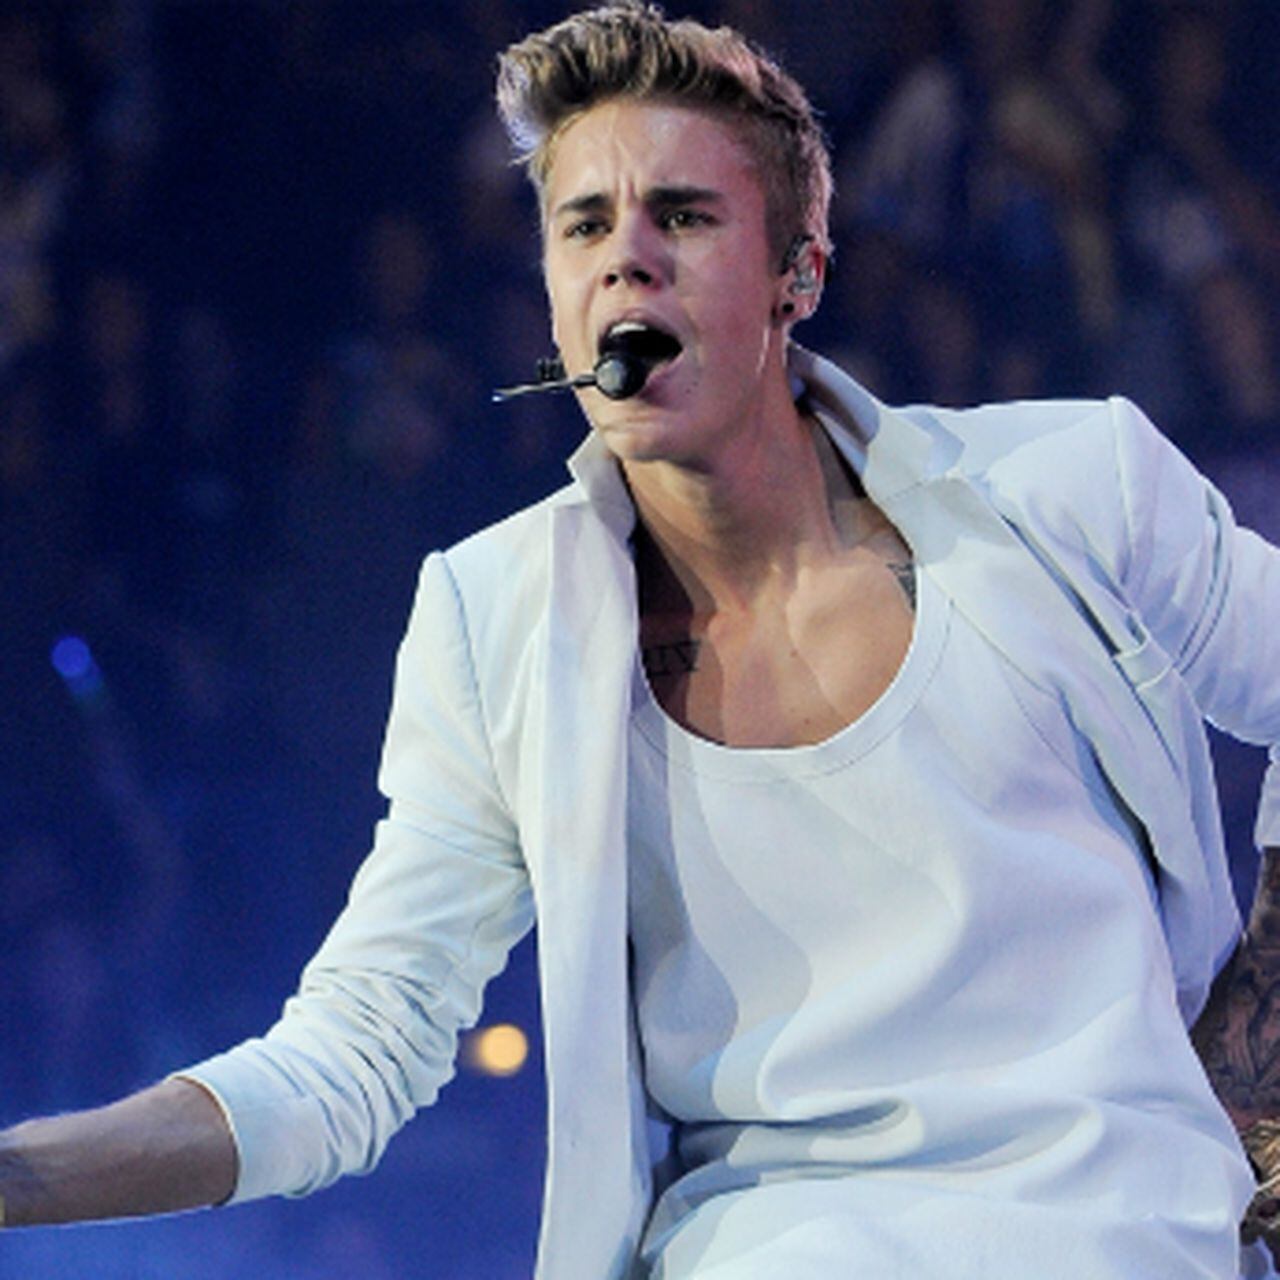 Peaches”: Justin Bieber canta sobre maconha em música nova - POPline